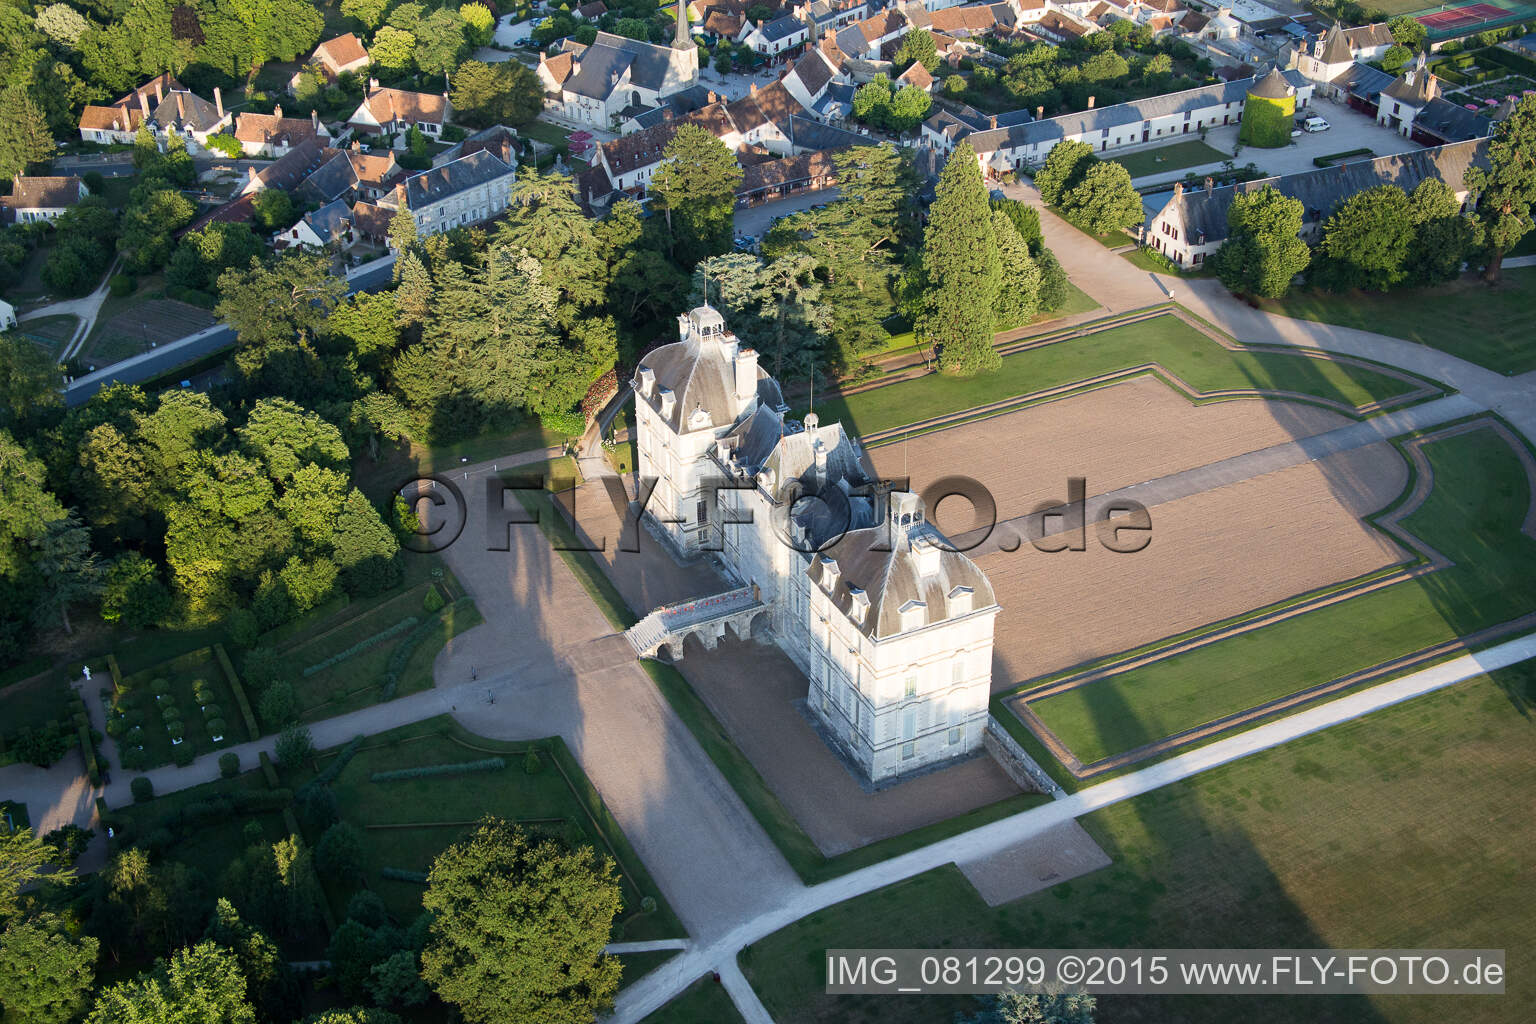 Drone image of Castle Cheverny - Chateau de Cheverny in Cheverny in Centre-Val de Loire, France